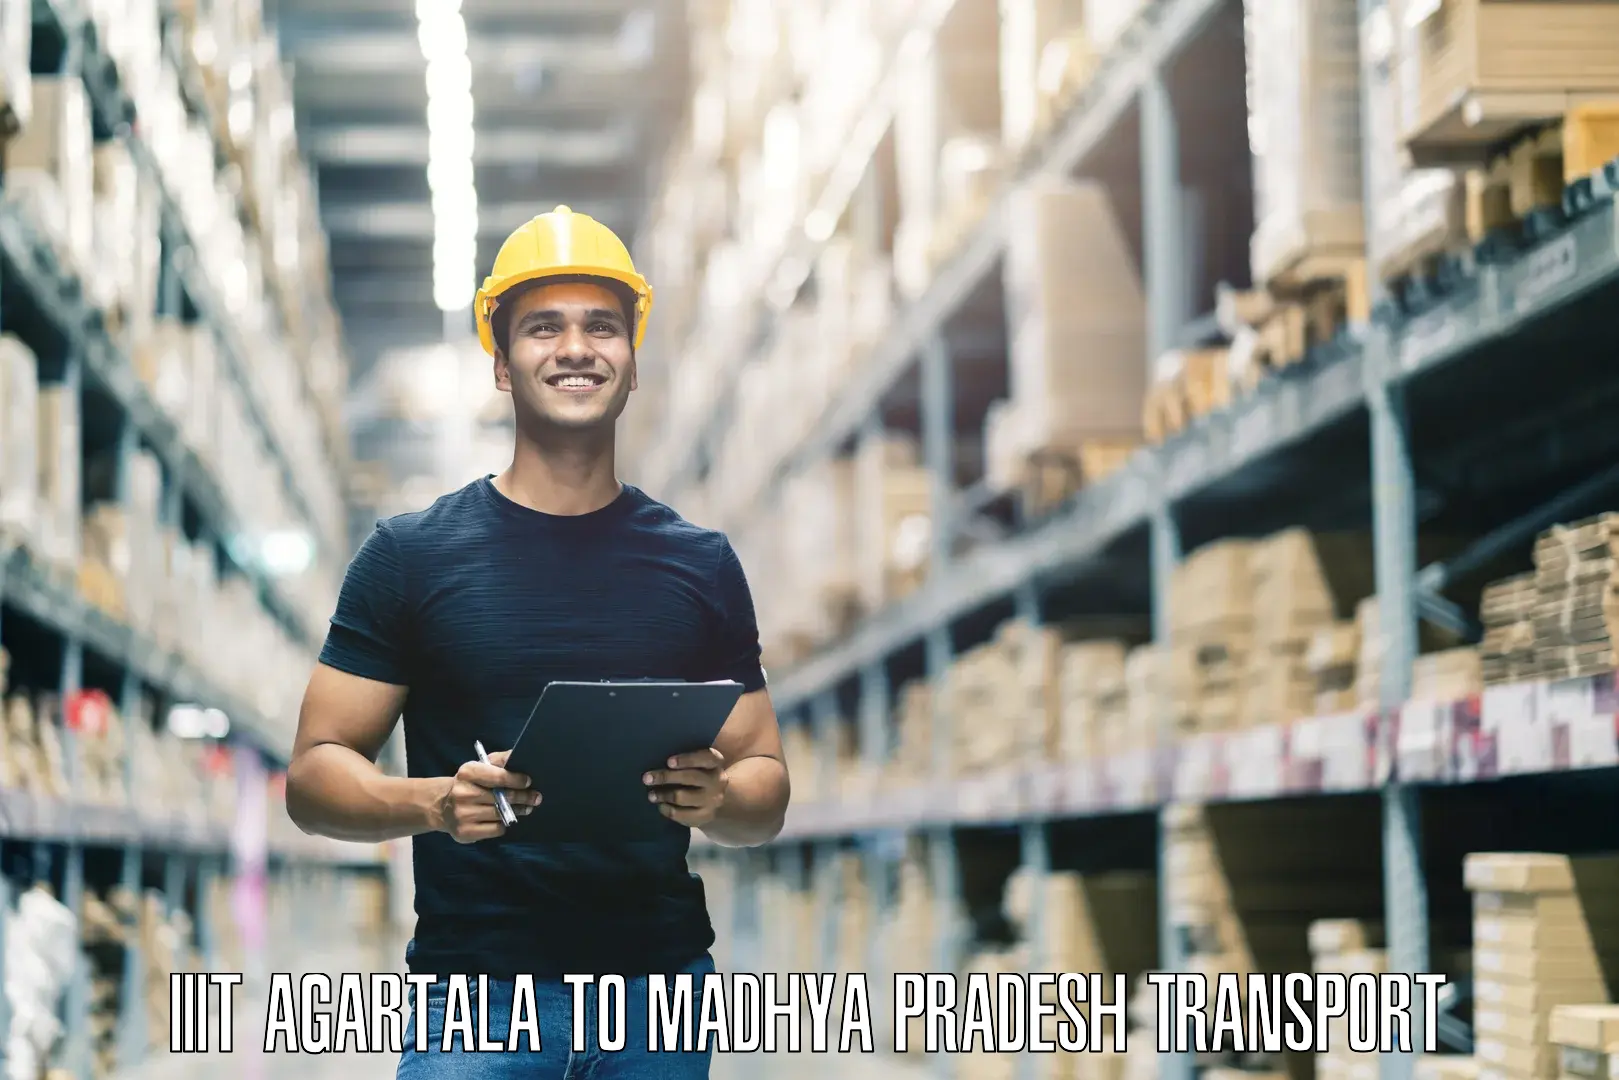 Logistics transportation services IIIT Agartala to Panna